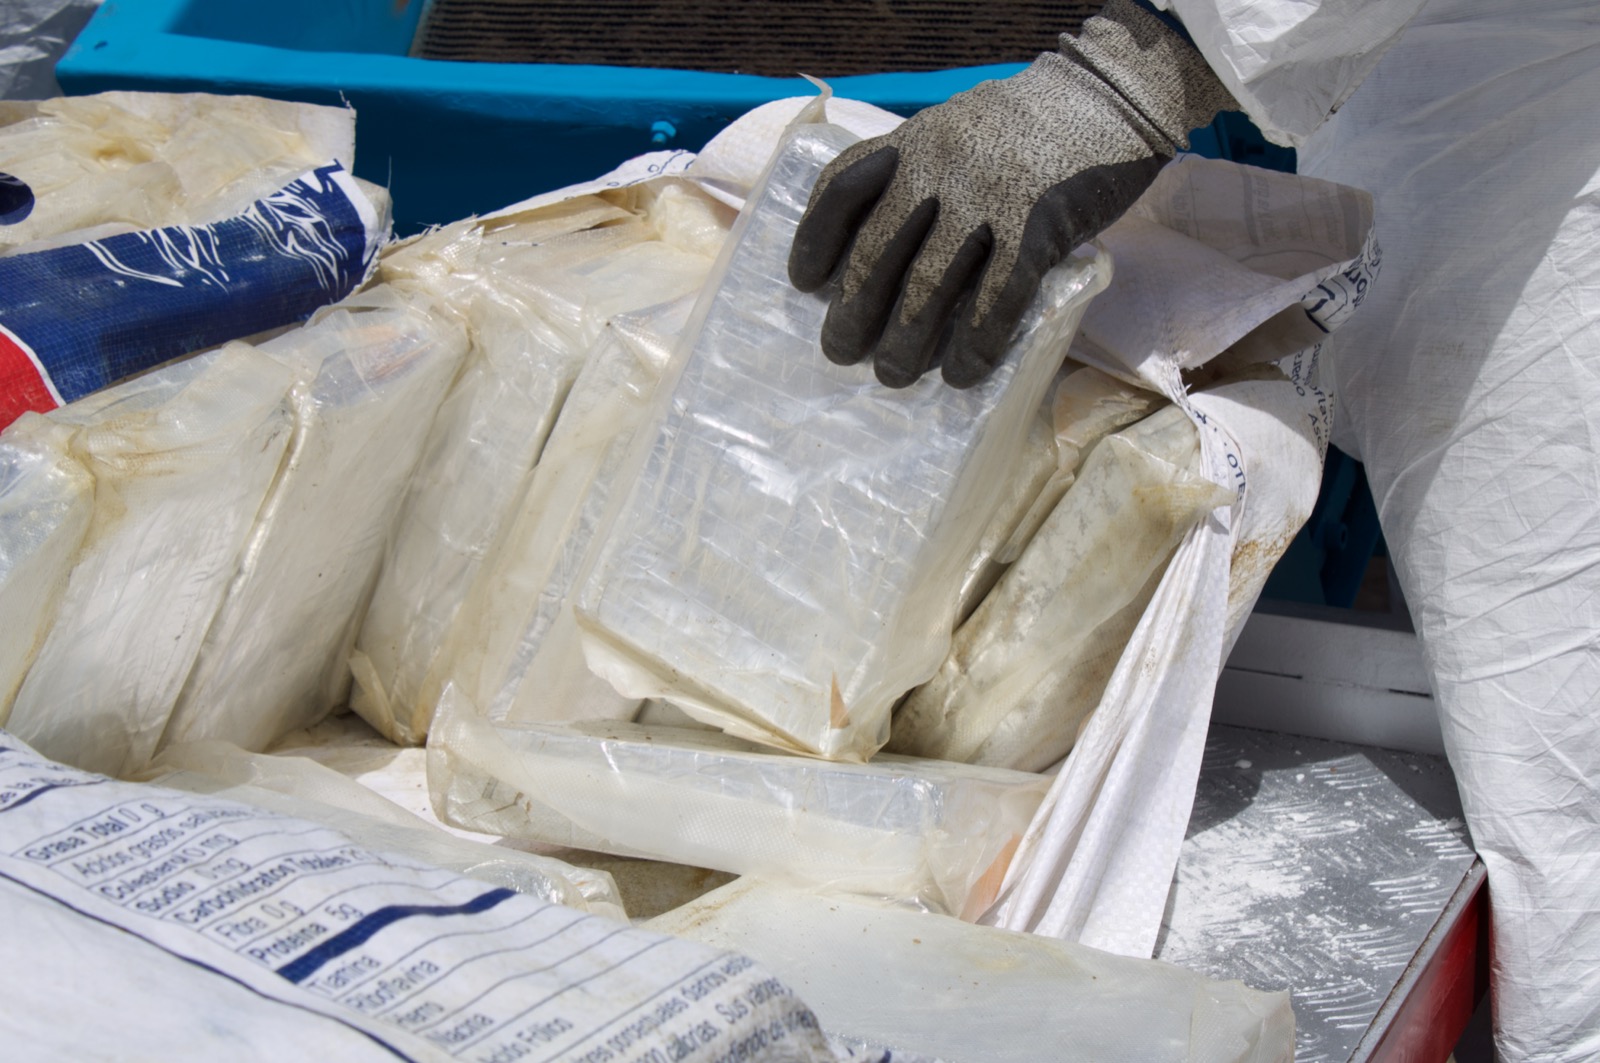 La cocaína incautada se mezcla con materiales como arena, ripio o vidrio, así se encapsula y queda inerte. 